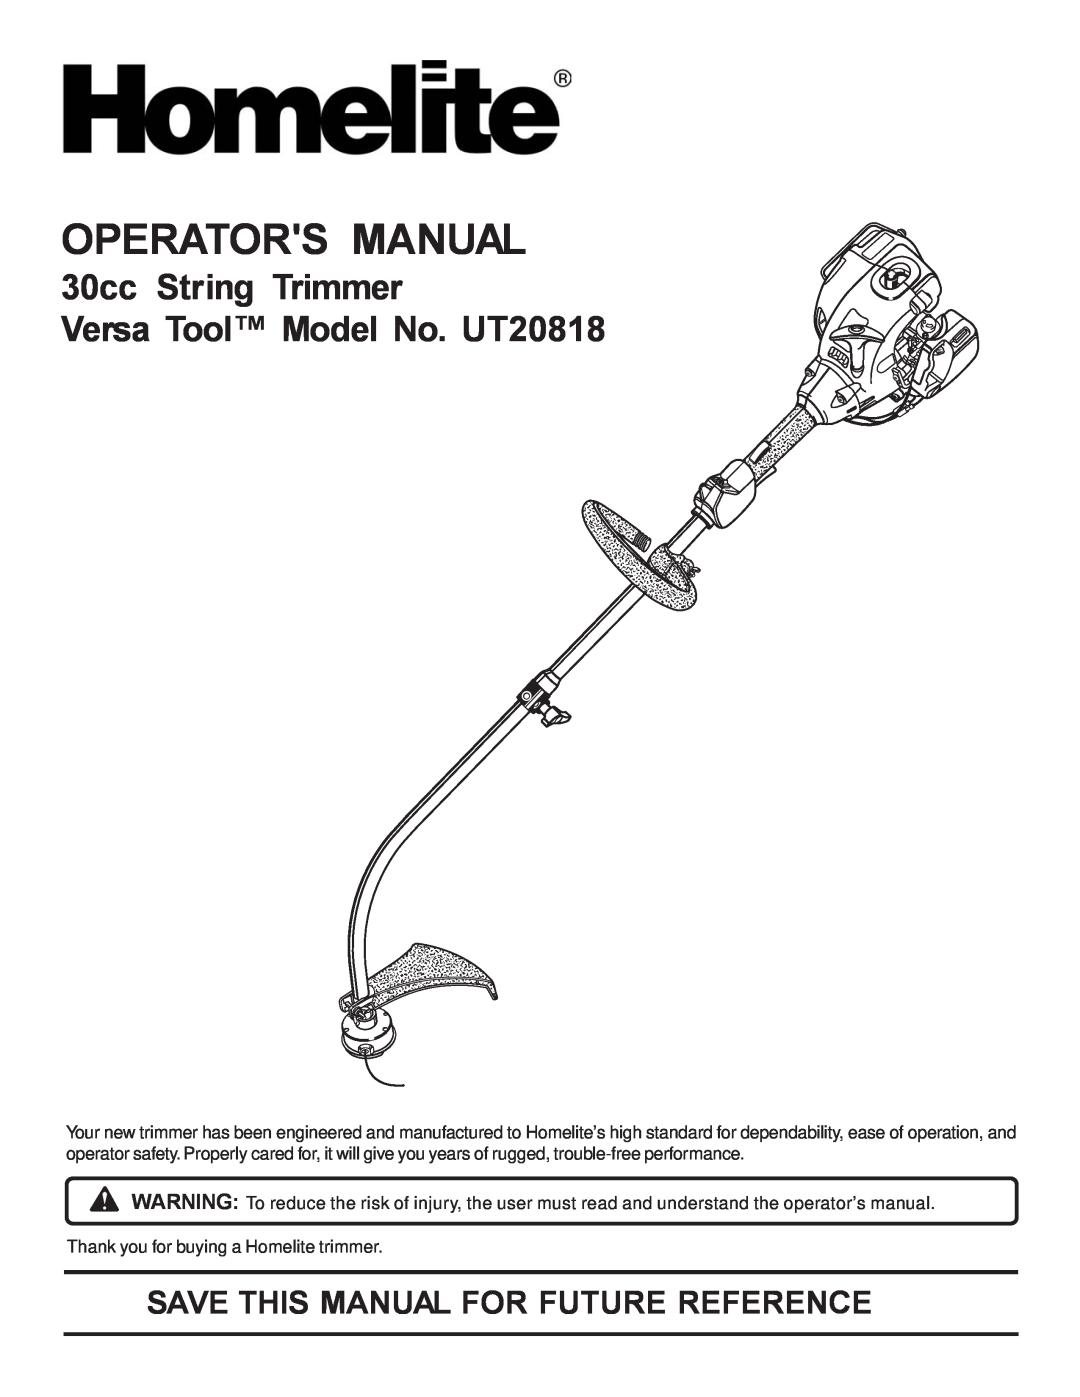 Homelite manual Operators Manual, 30cc String Trimmer Versa Tool Model No. UT20818 